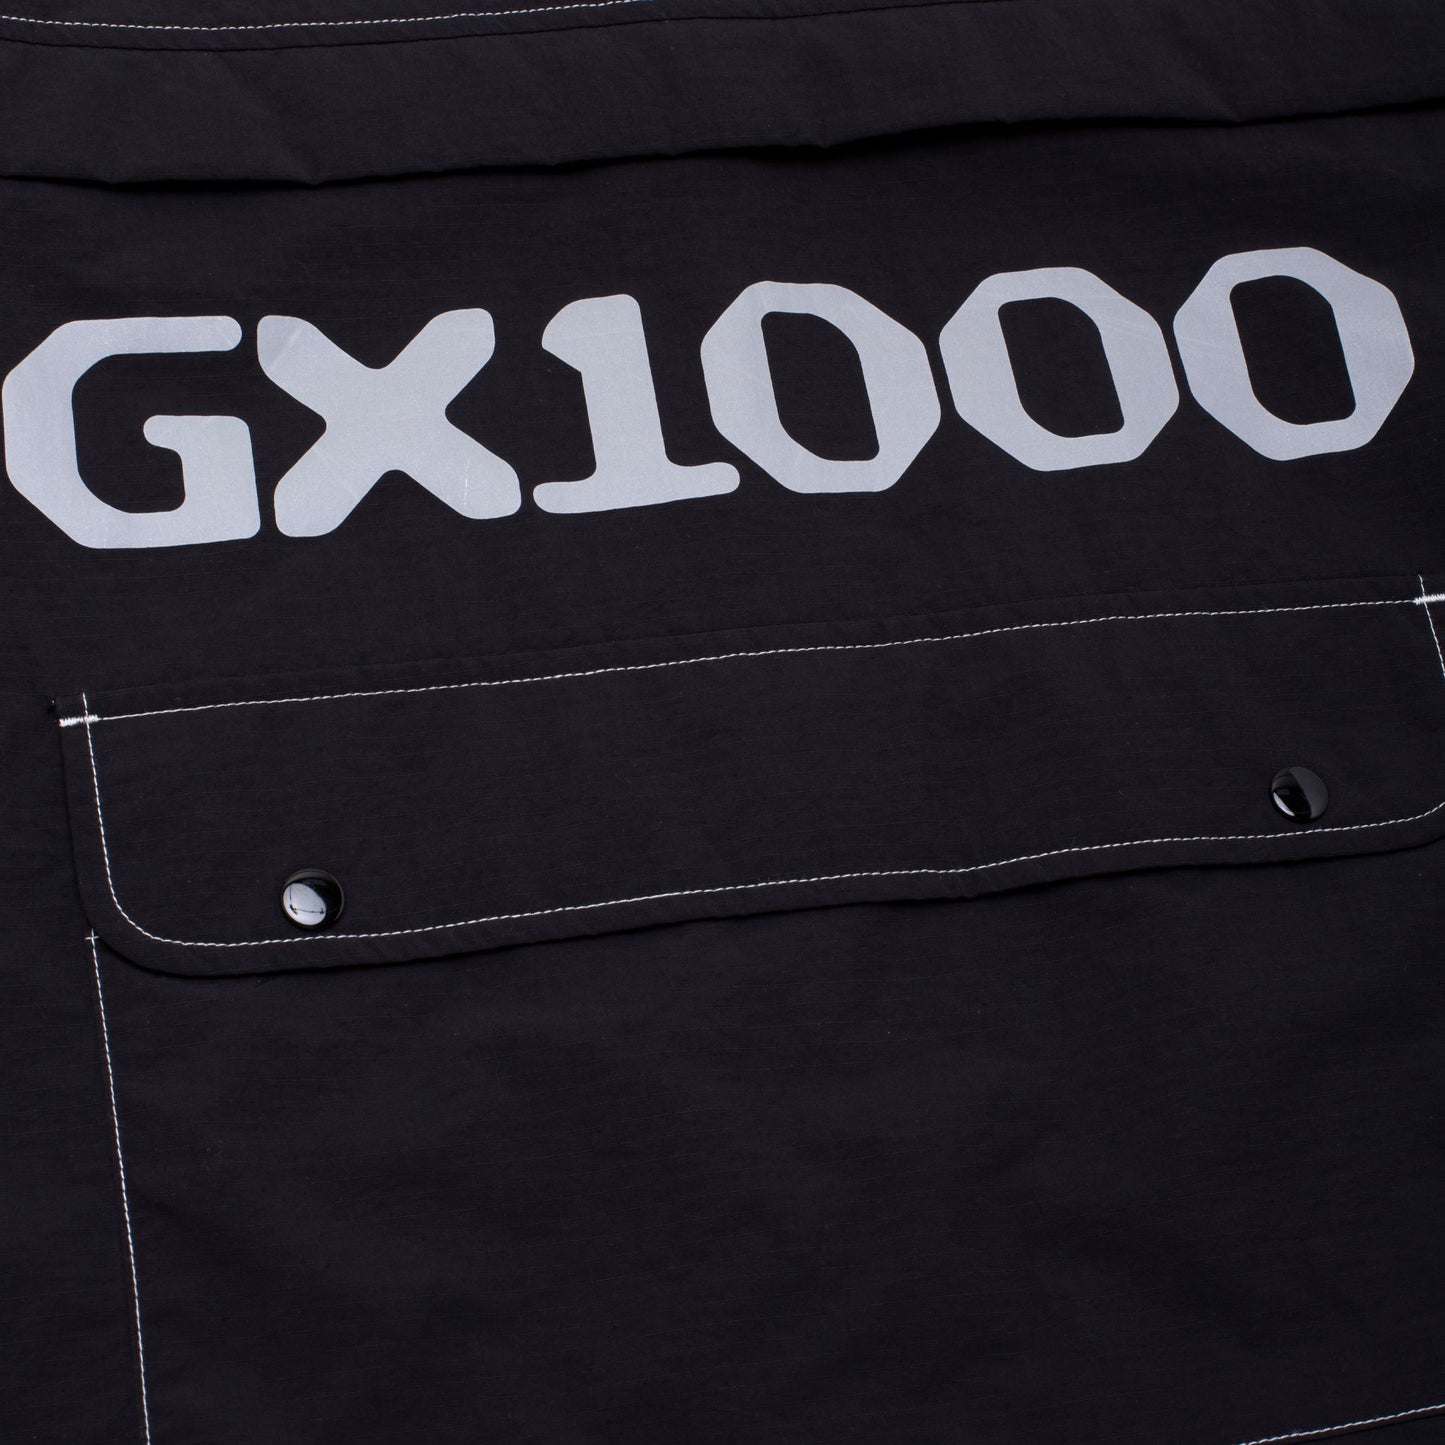 GX1000 OG Logo Anorak Black